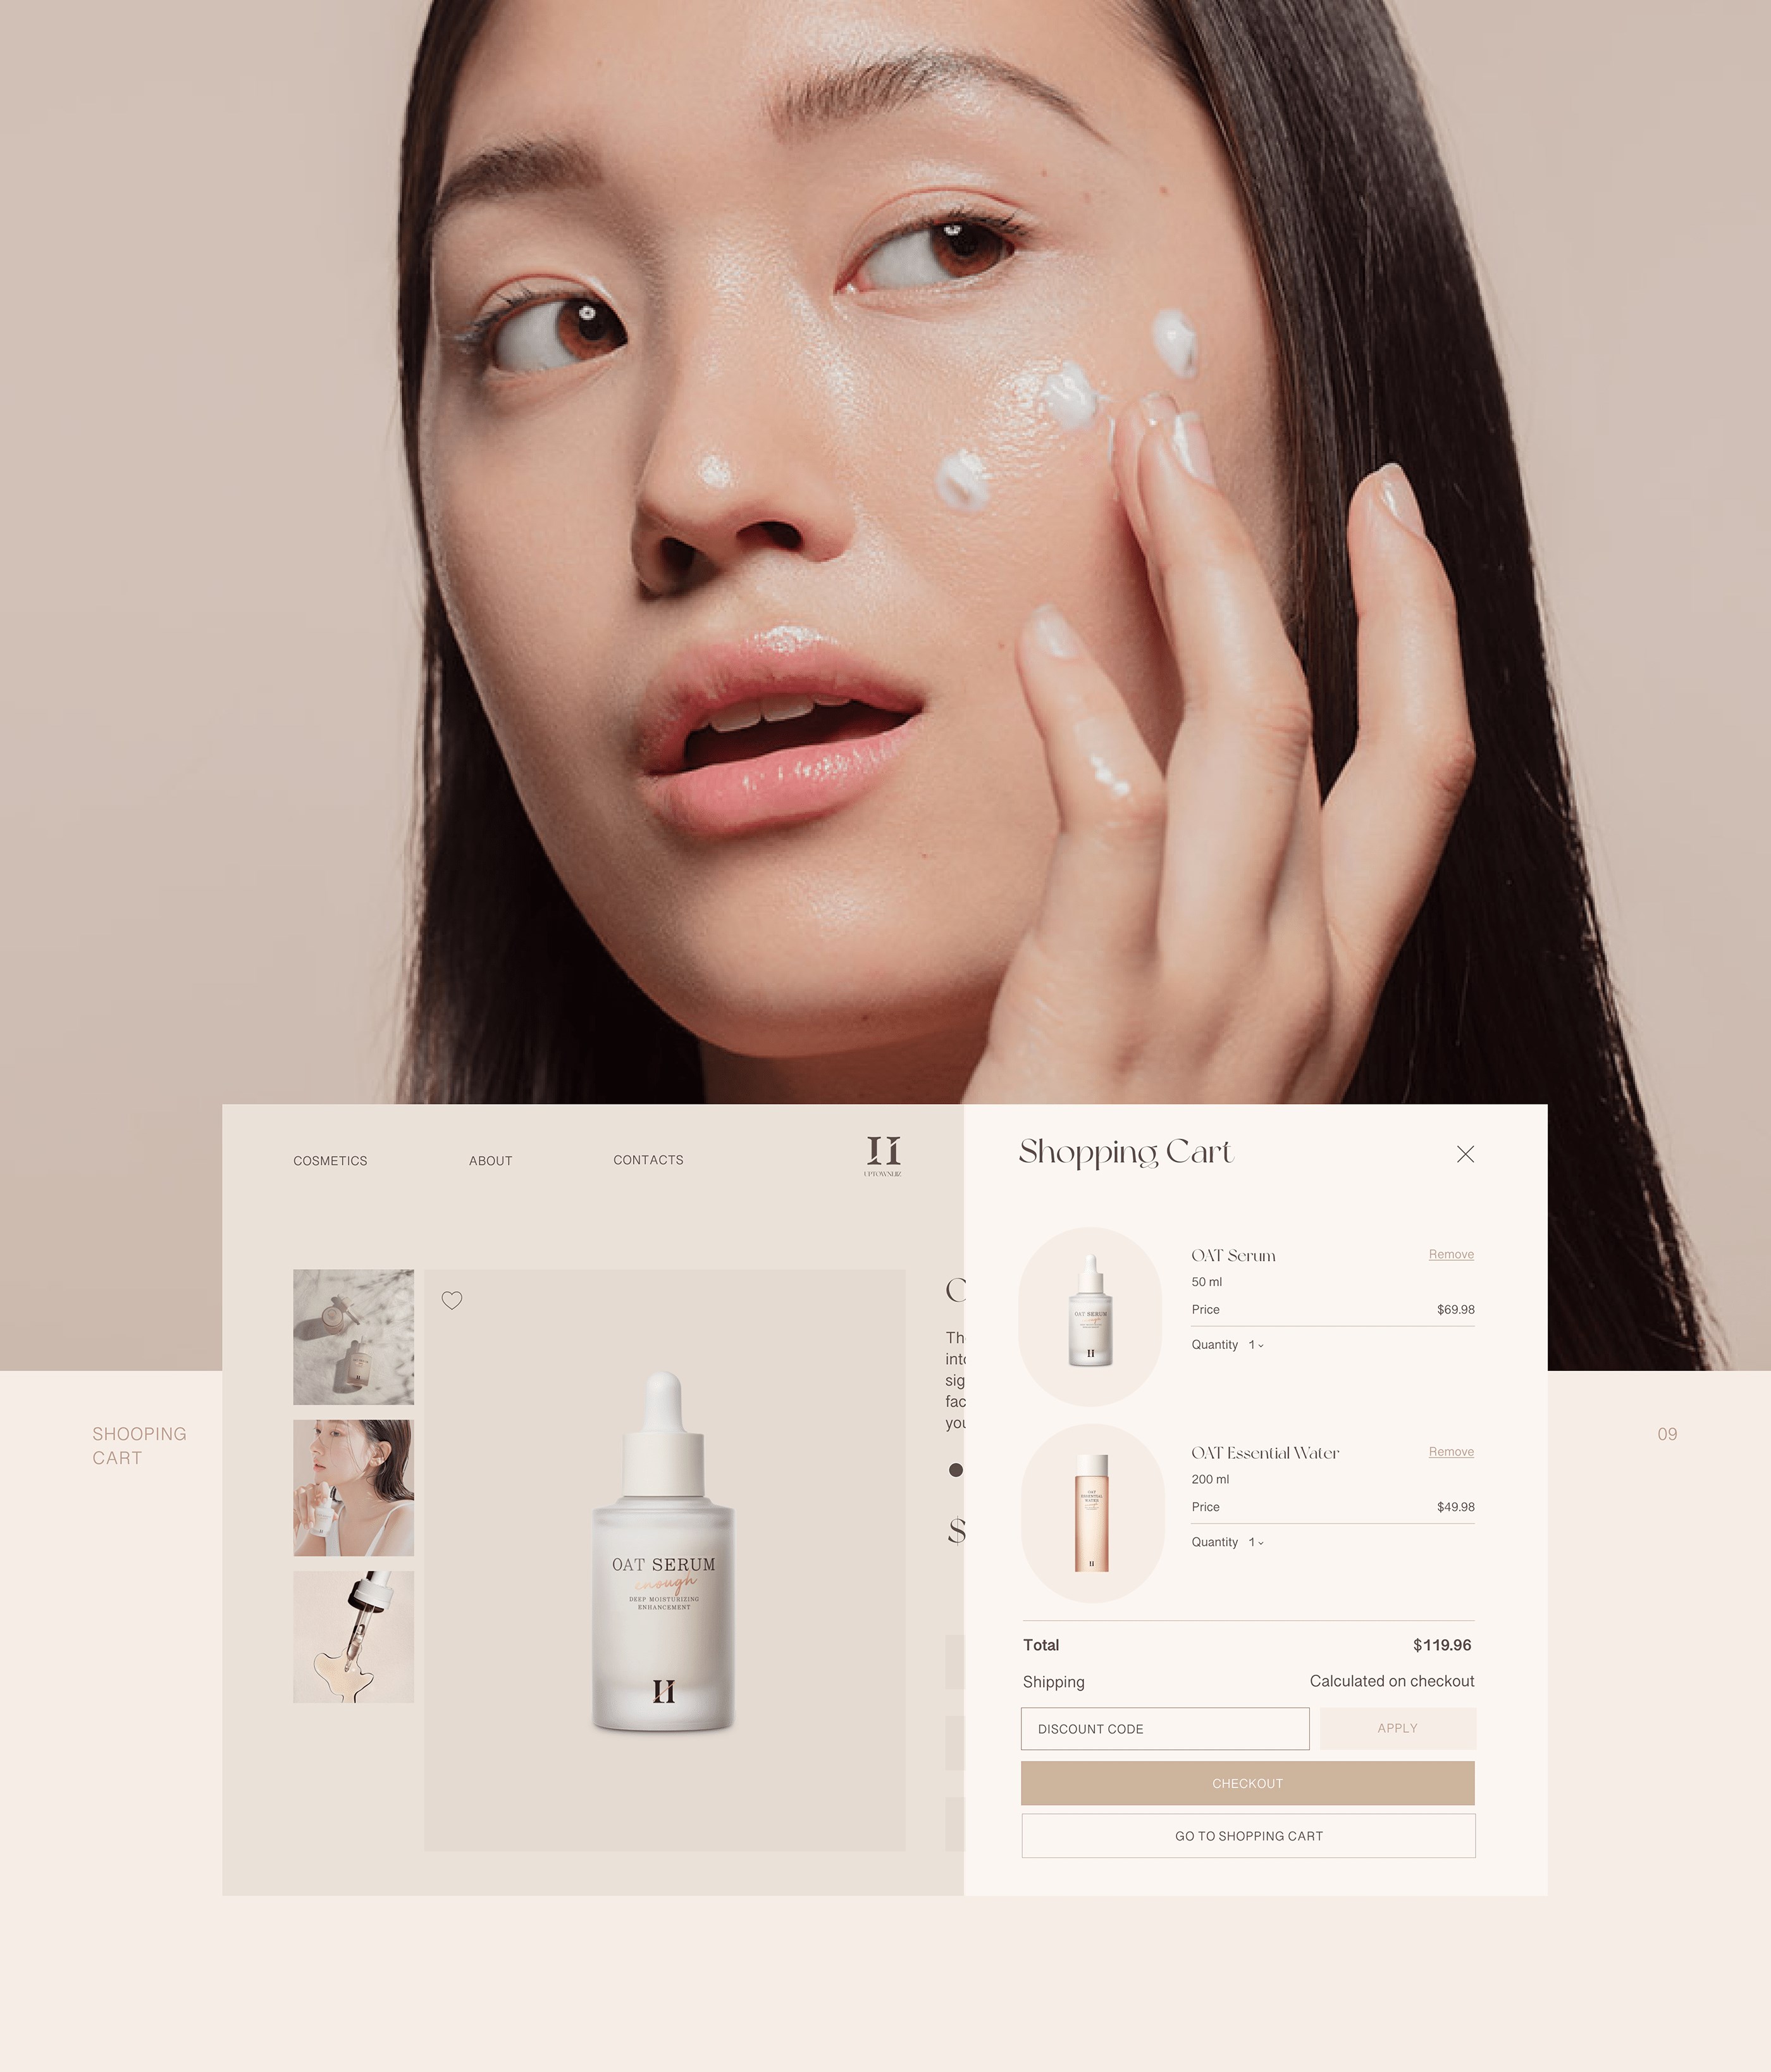 有机韩国化妆品在线商店网络设计-10.jpg